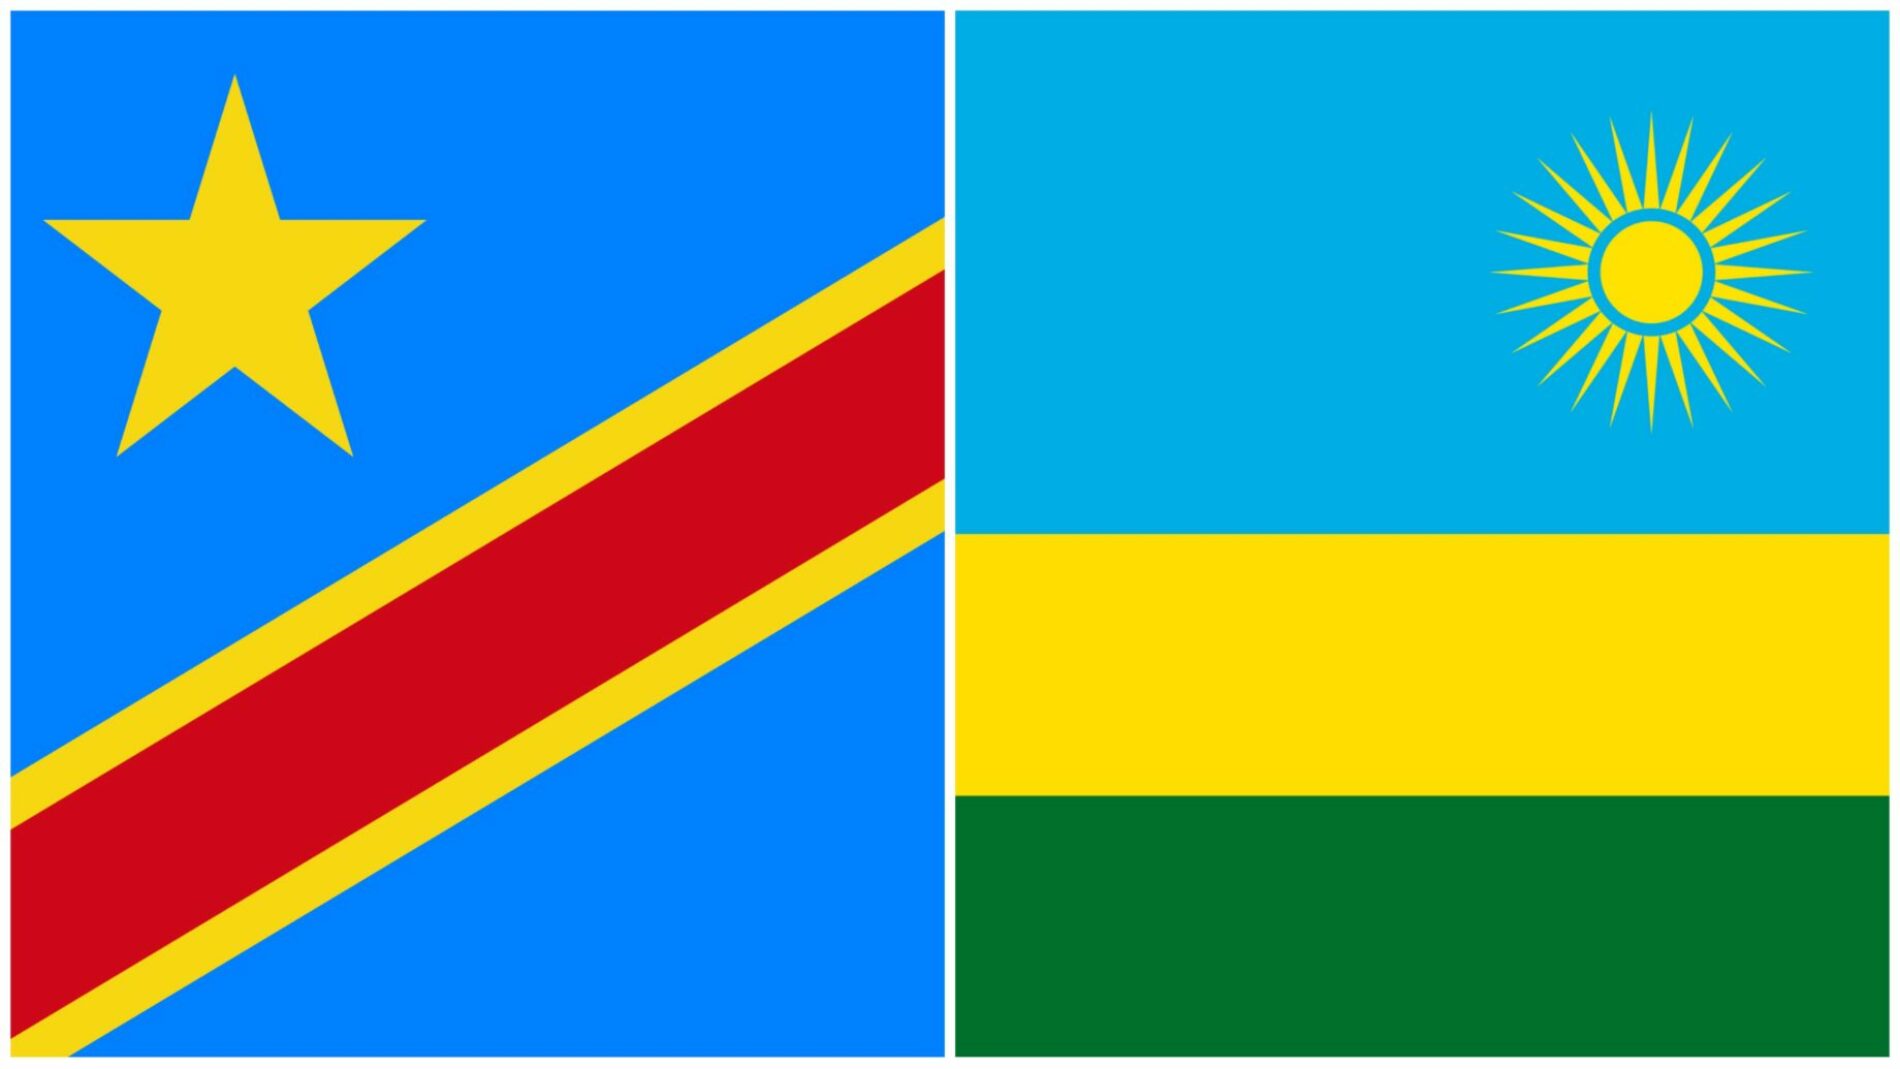 Rwanda-DRC: tuhuma za DRC kuwa Rwanda inafanya upelelezi dhidi yake ni ongezeko la vishawishi kwa wananchi kushambulia